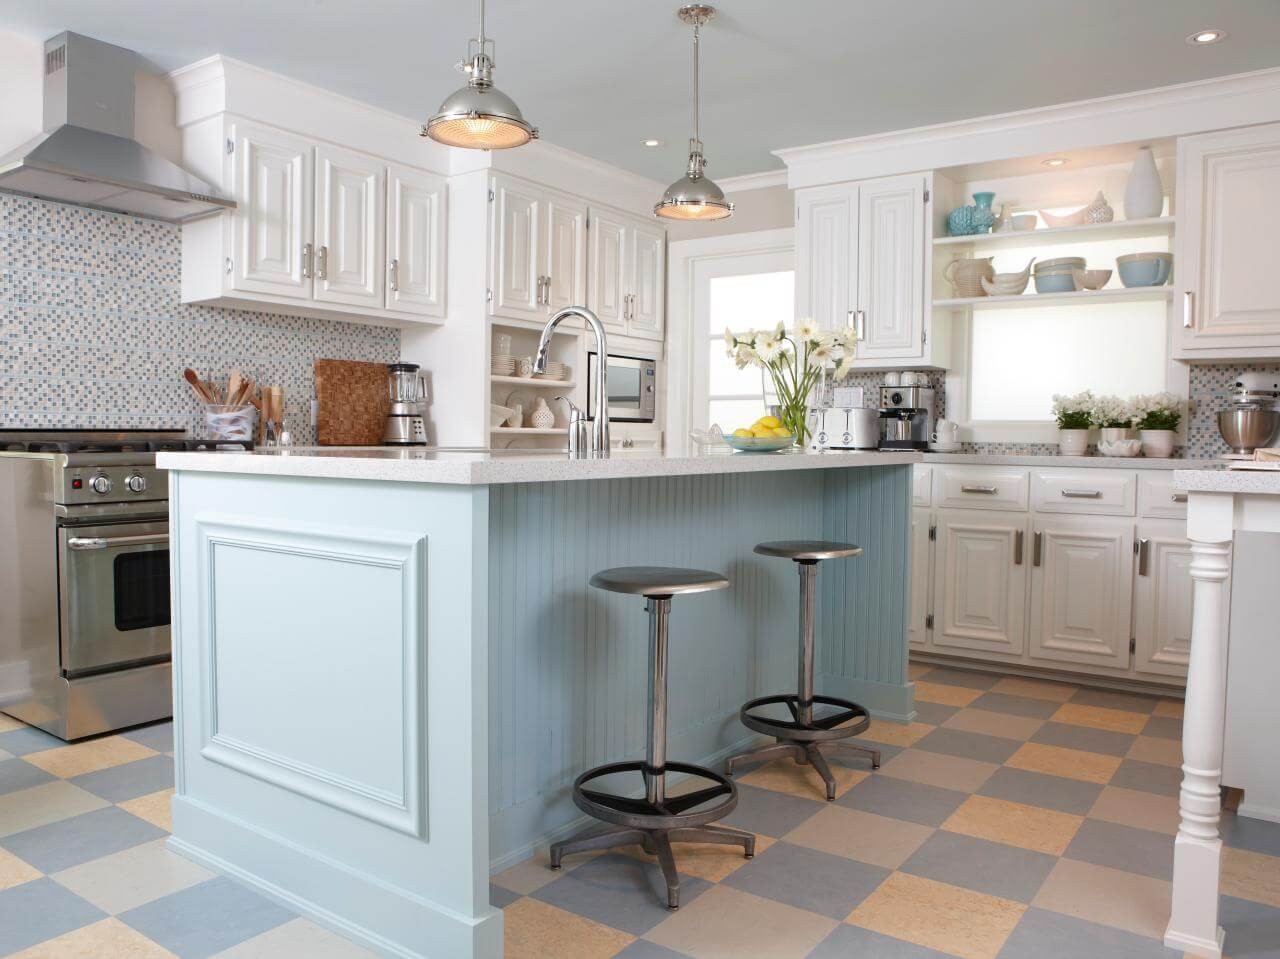 Tủ bếp màu xanh ngọc kết hợp với gam màu trắng nhẹ nhàng, xinh xắn